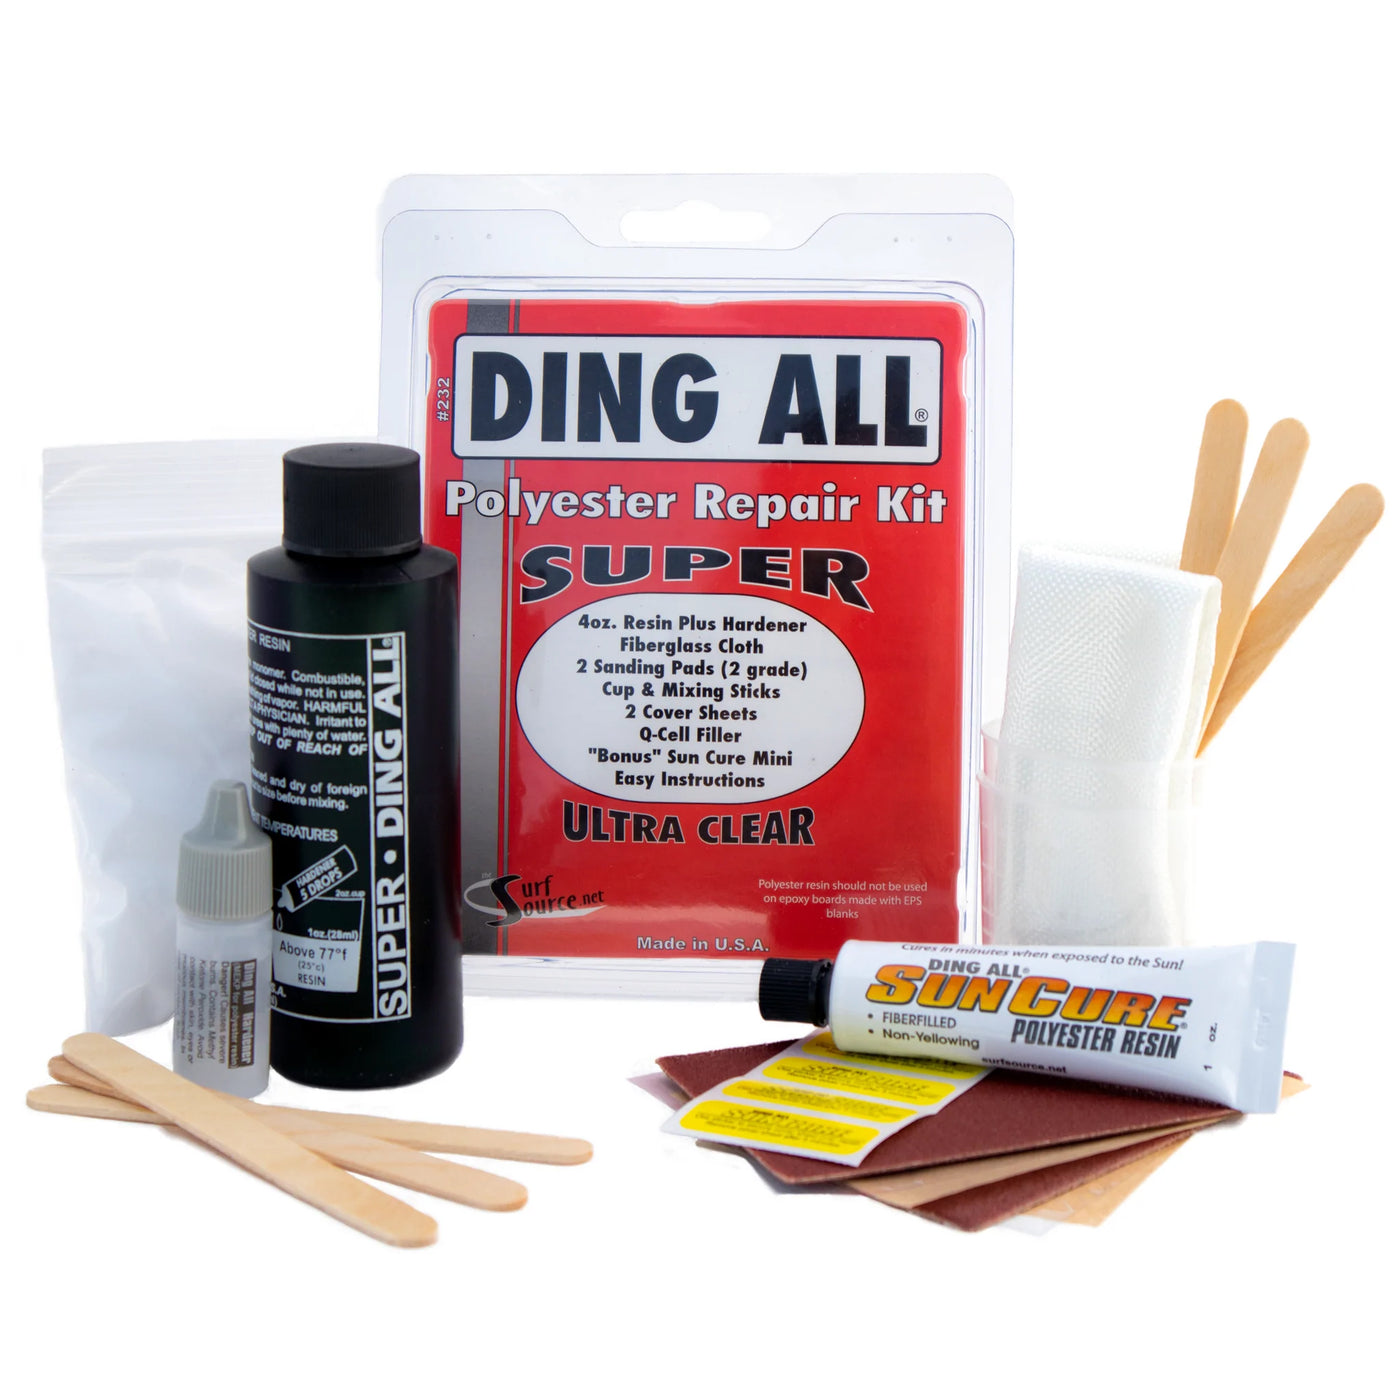 Ding All Super POLY Repair Kit